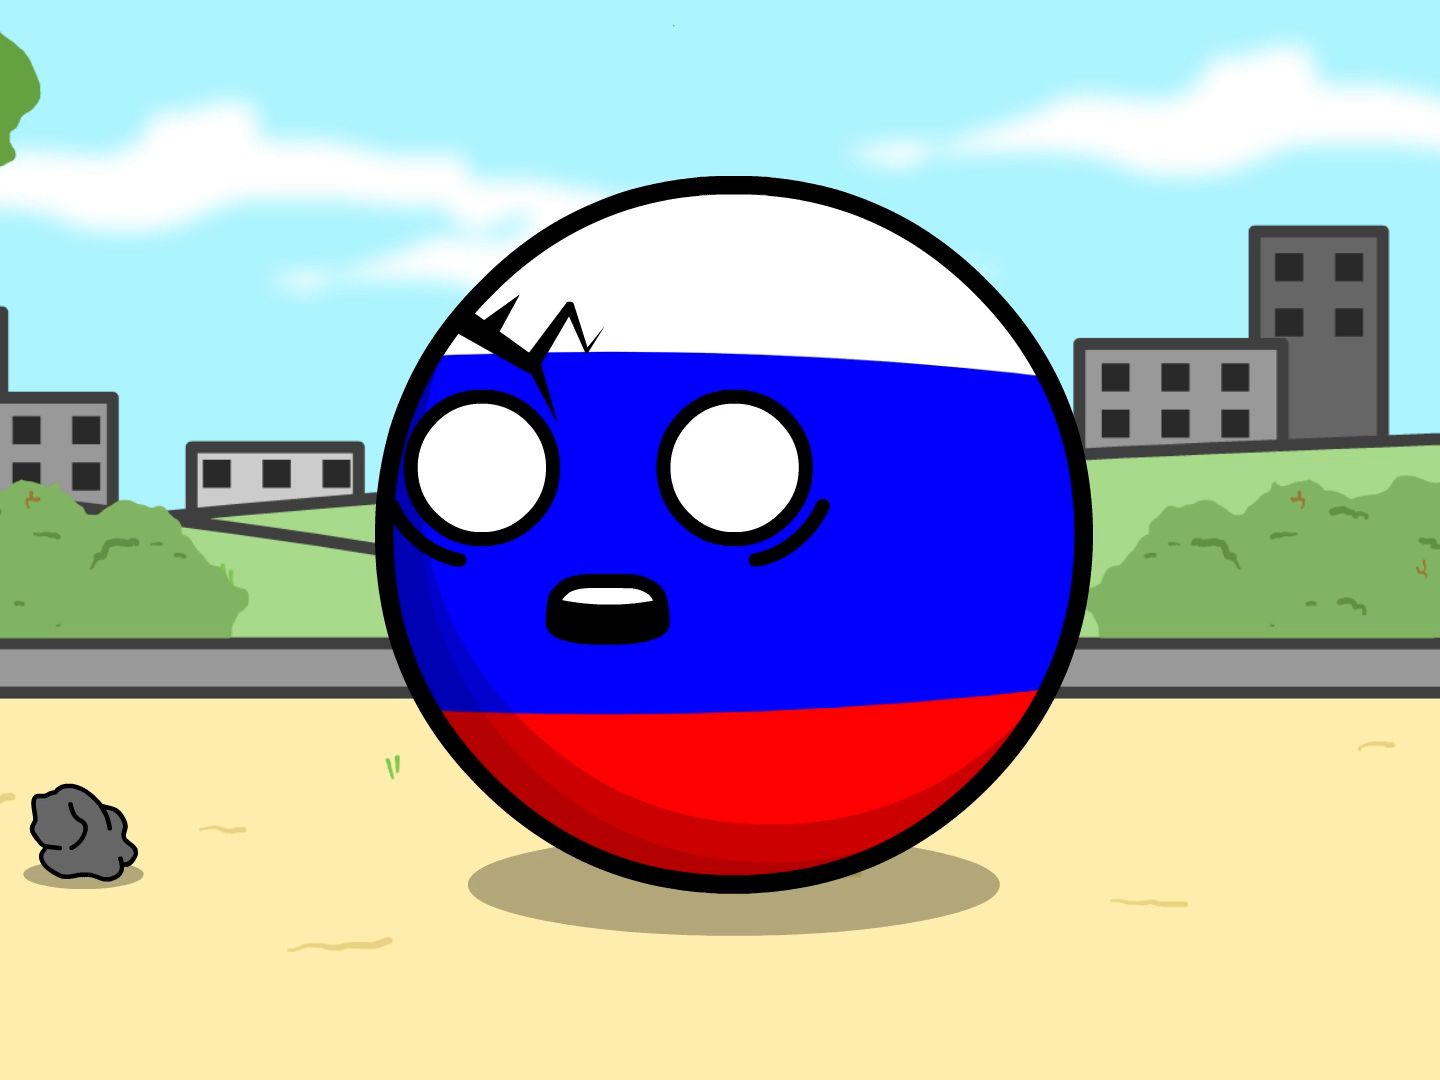 俄罗斯波兰球表情包图片